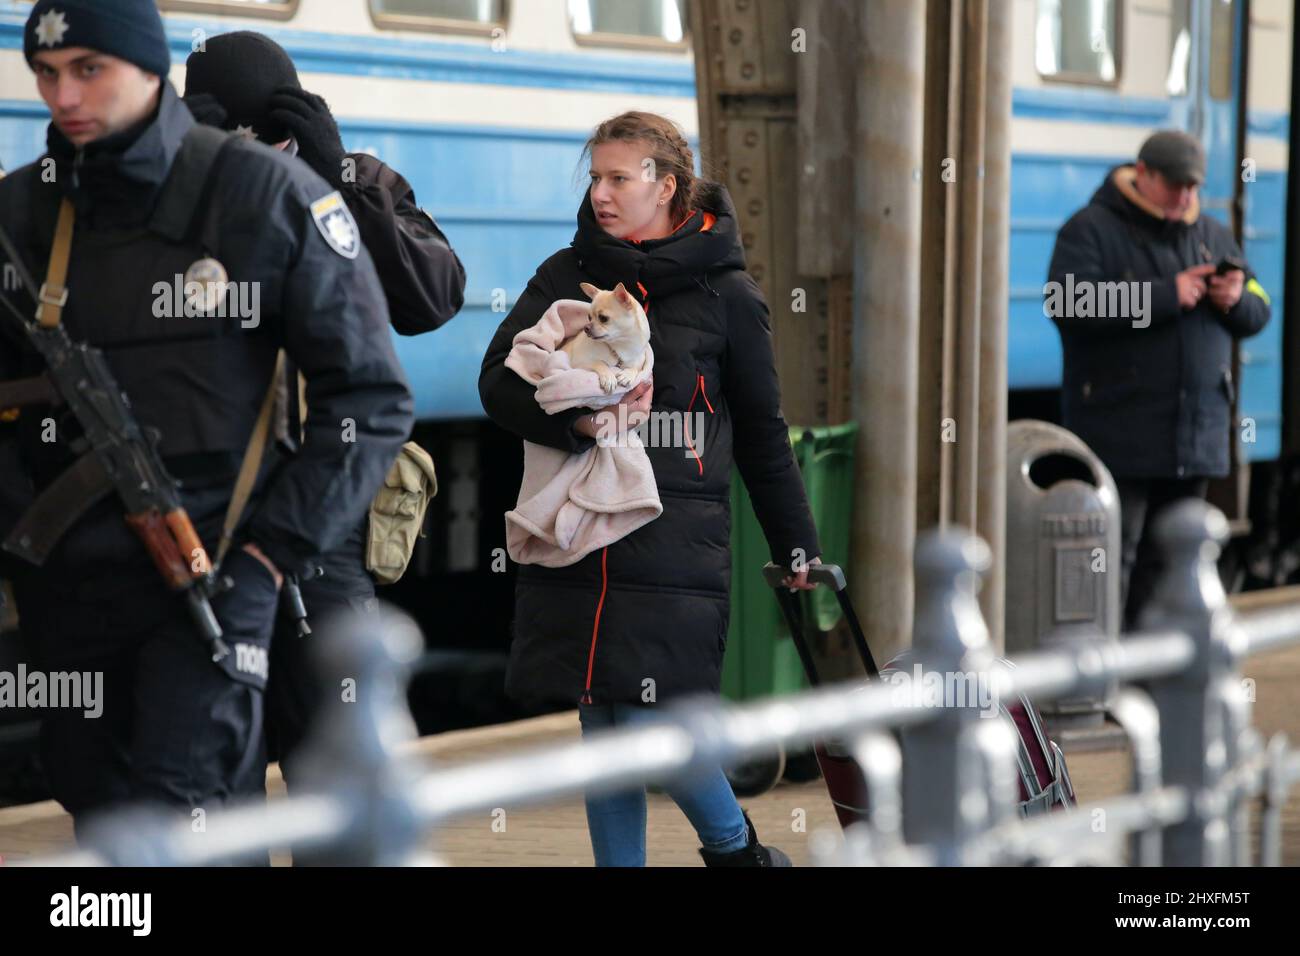 LVIV, UKRAINE - 11. MÄRZ 2022 - Ein Mädchen, das einen Koffer zieht, trägt einen Hund, der in eine Decke gehüllt ist, während Menschen, die vor der russischen Invasion fliehen, auf eine Evakuierung warten Stockfoto